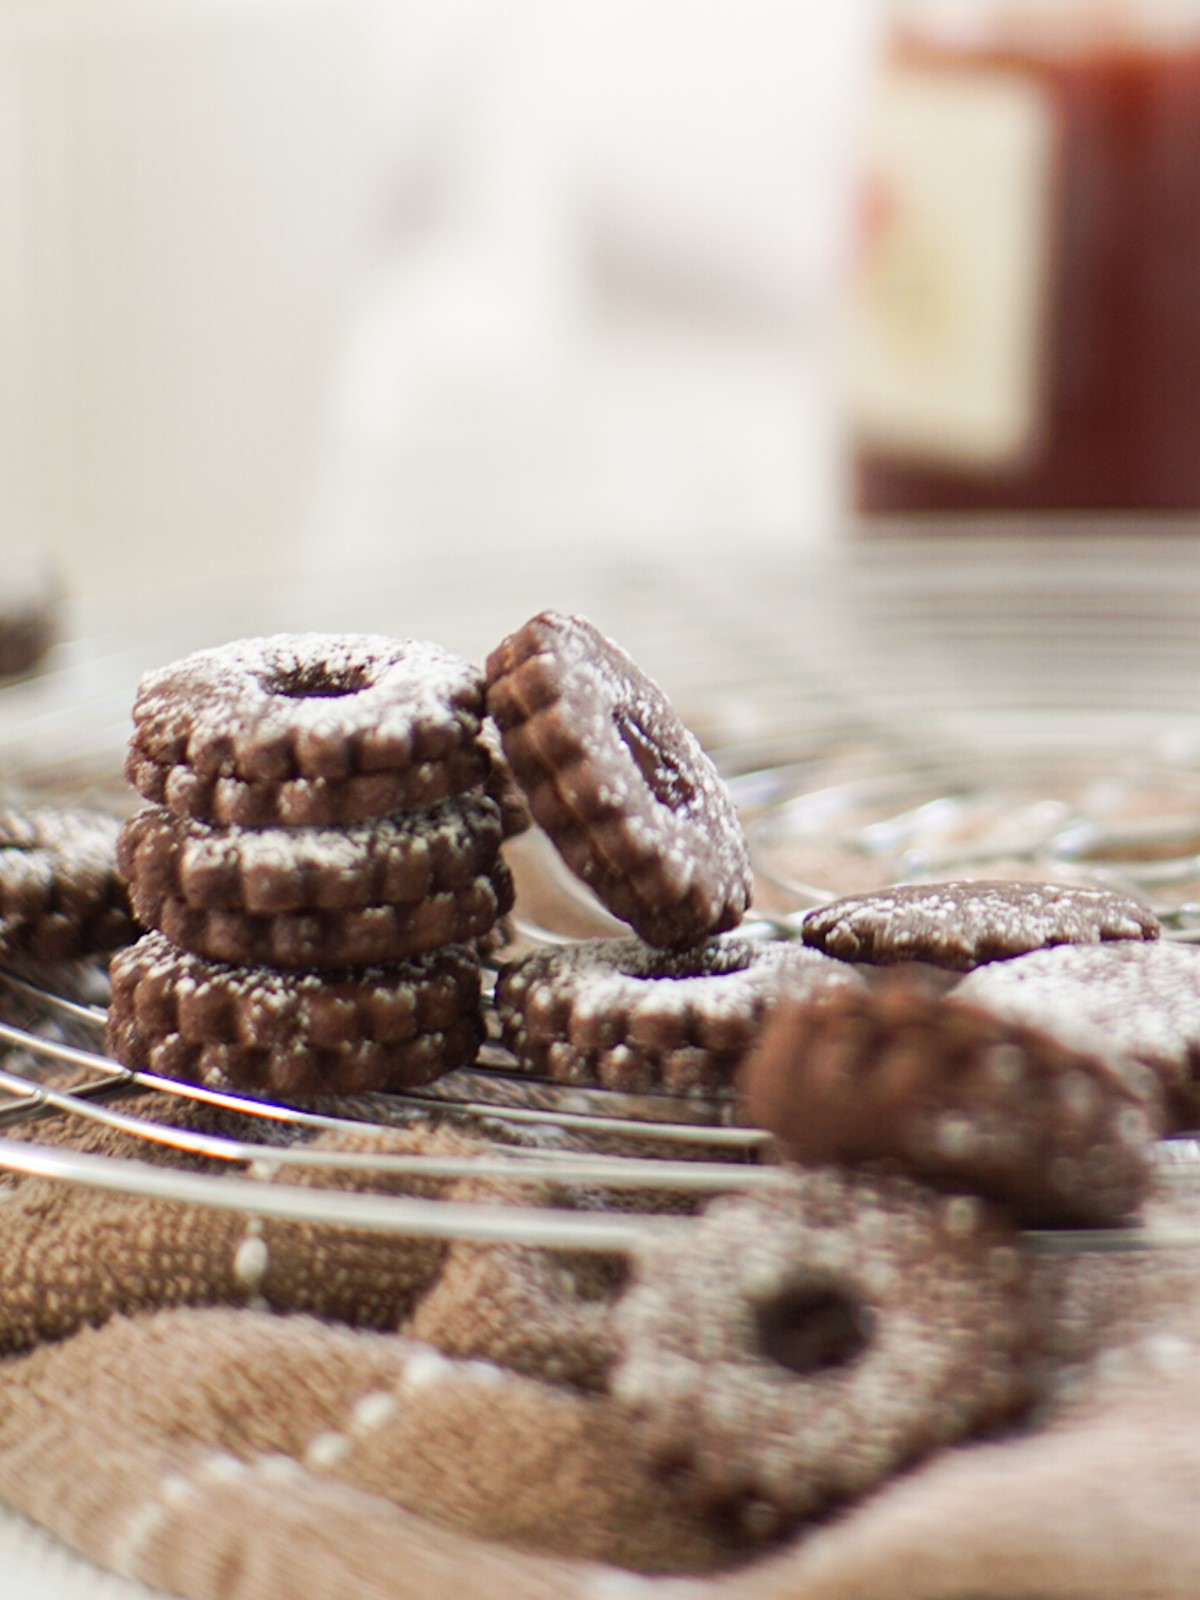 Schokoladenkekse mit Erdbeermarmelade - Chocolate cookies